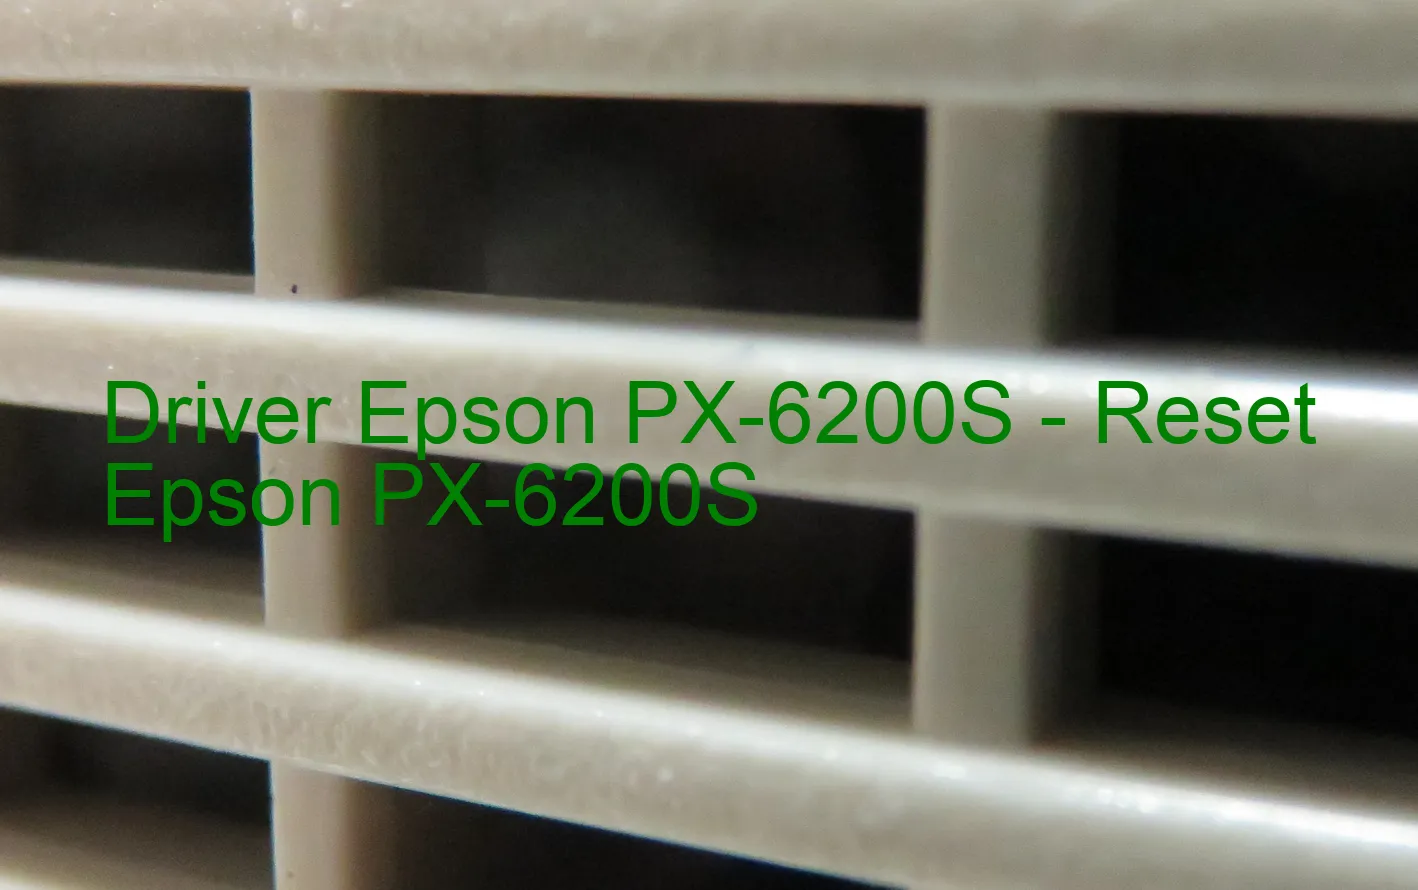 Epson PX-6200Sのドライバー、Epson PX-6200Sのリセットソフトウェア